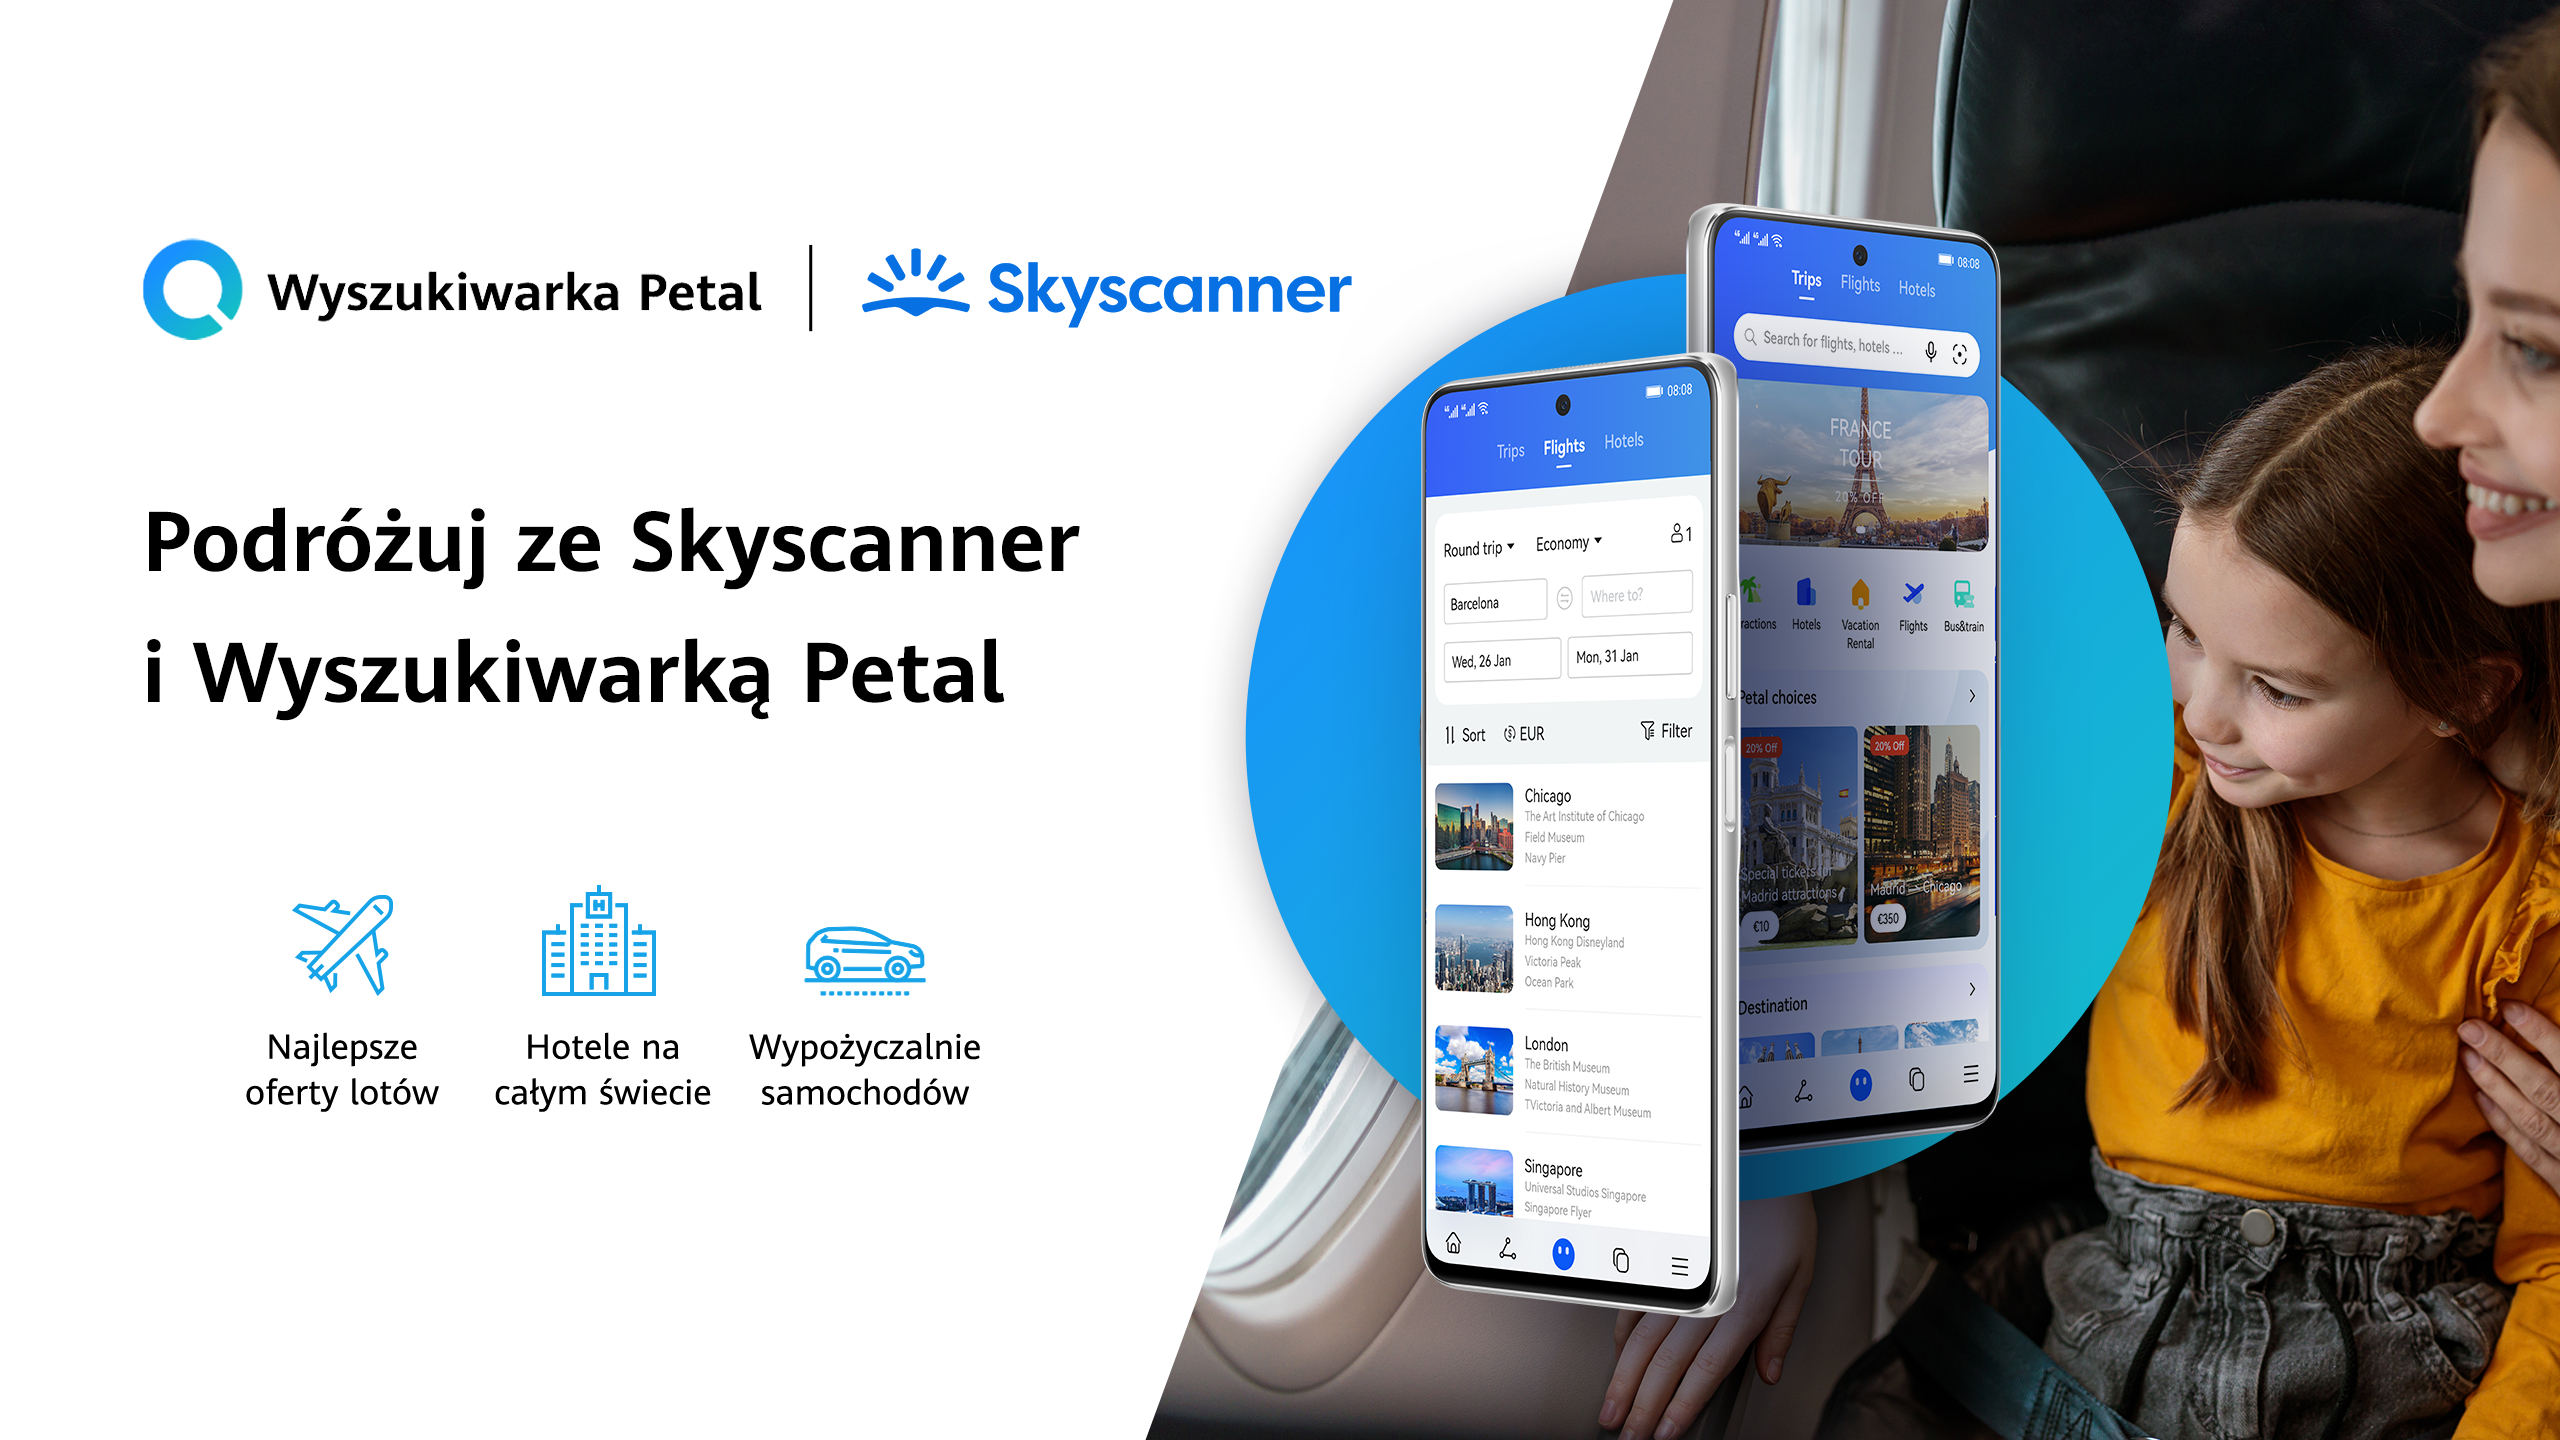 Huawei ze Skyscanner zapewnią użytkownikom Wyszukiwarki Petal oraz Map Petal szybkie wyszukanie i rezerwację lotów